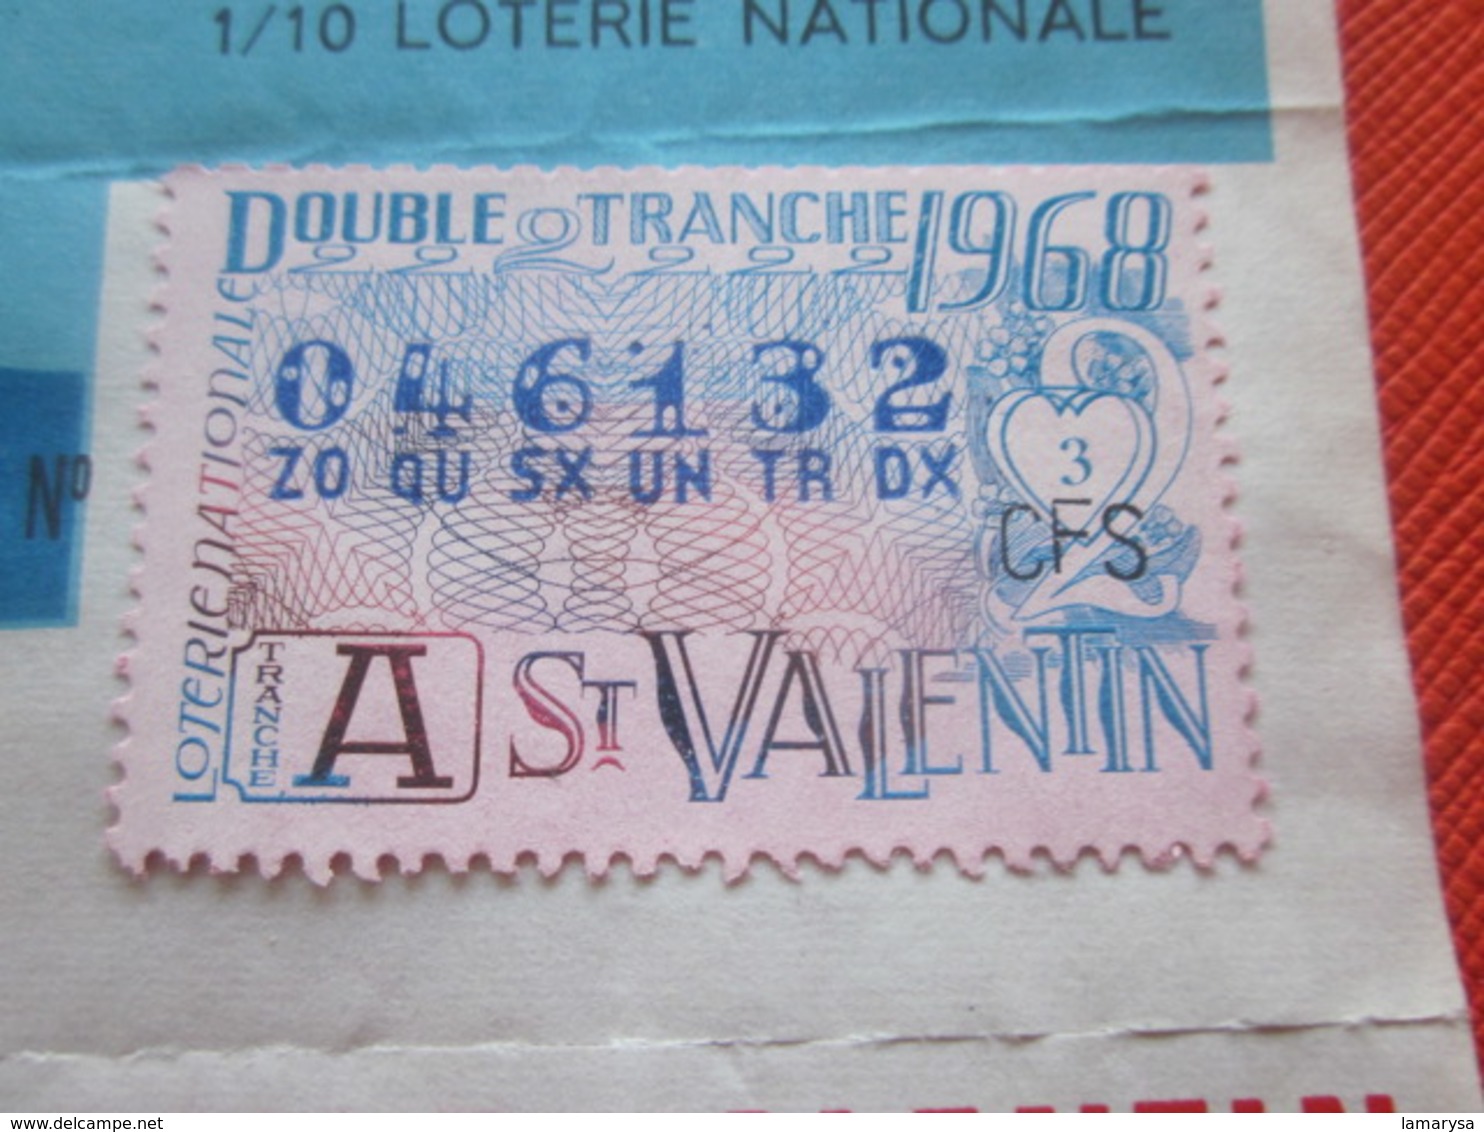 1968-ROSA DOUBLE TRANCHE SAINT VALENTIN-2 Billets De La Loterie Nationale+VIGNETTE-IMPRIMÉE TAILLE DOUCE - Billets De Loterie